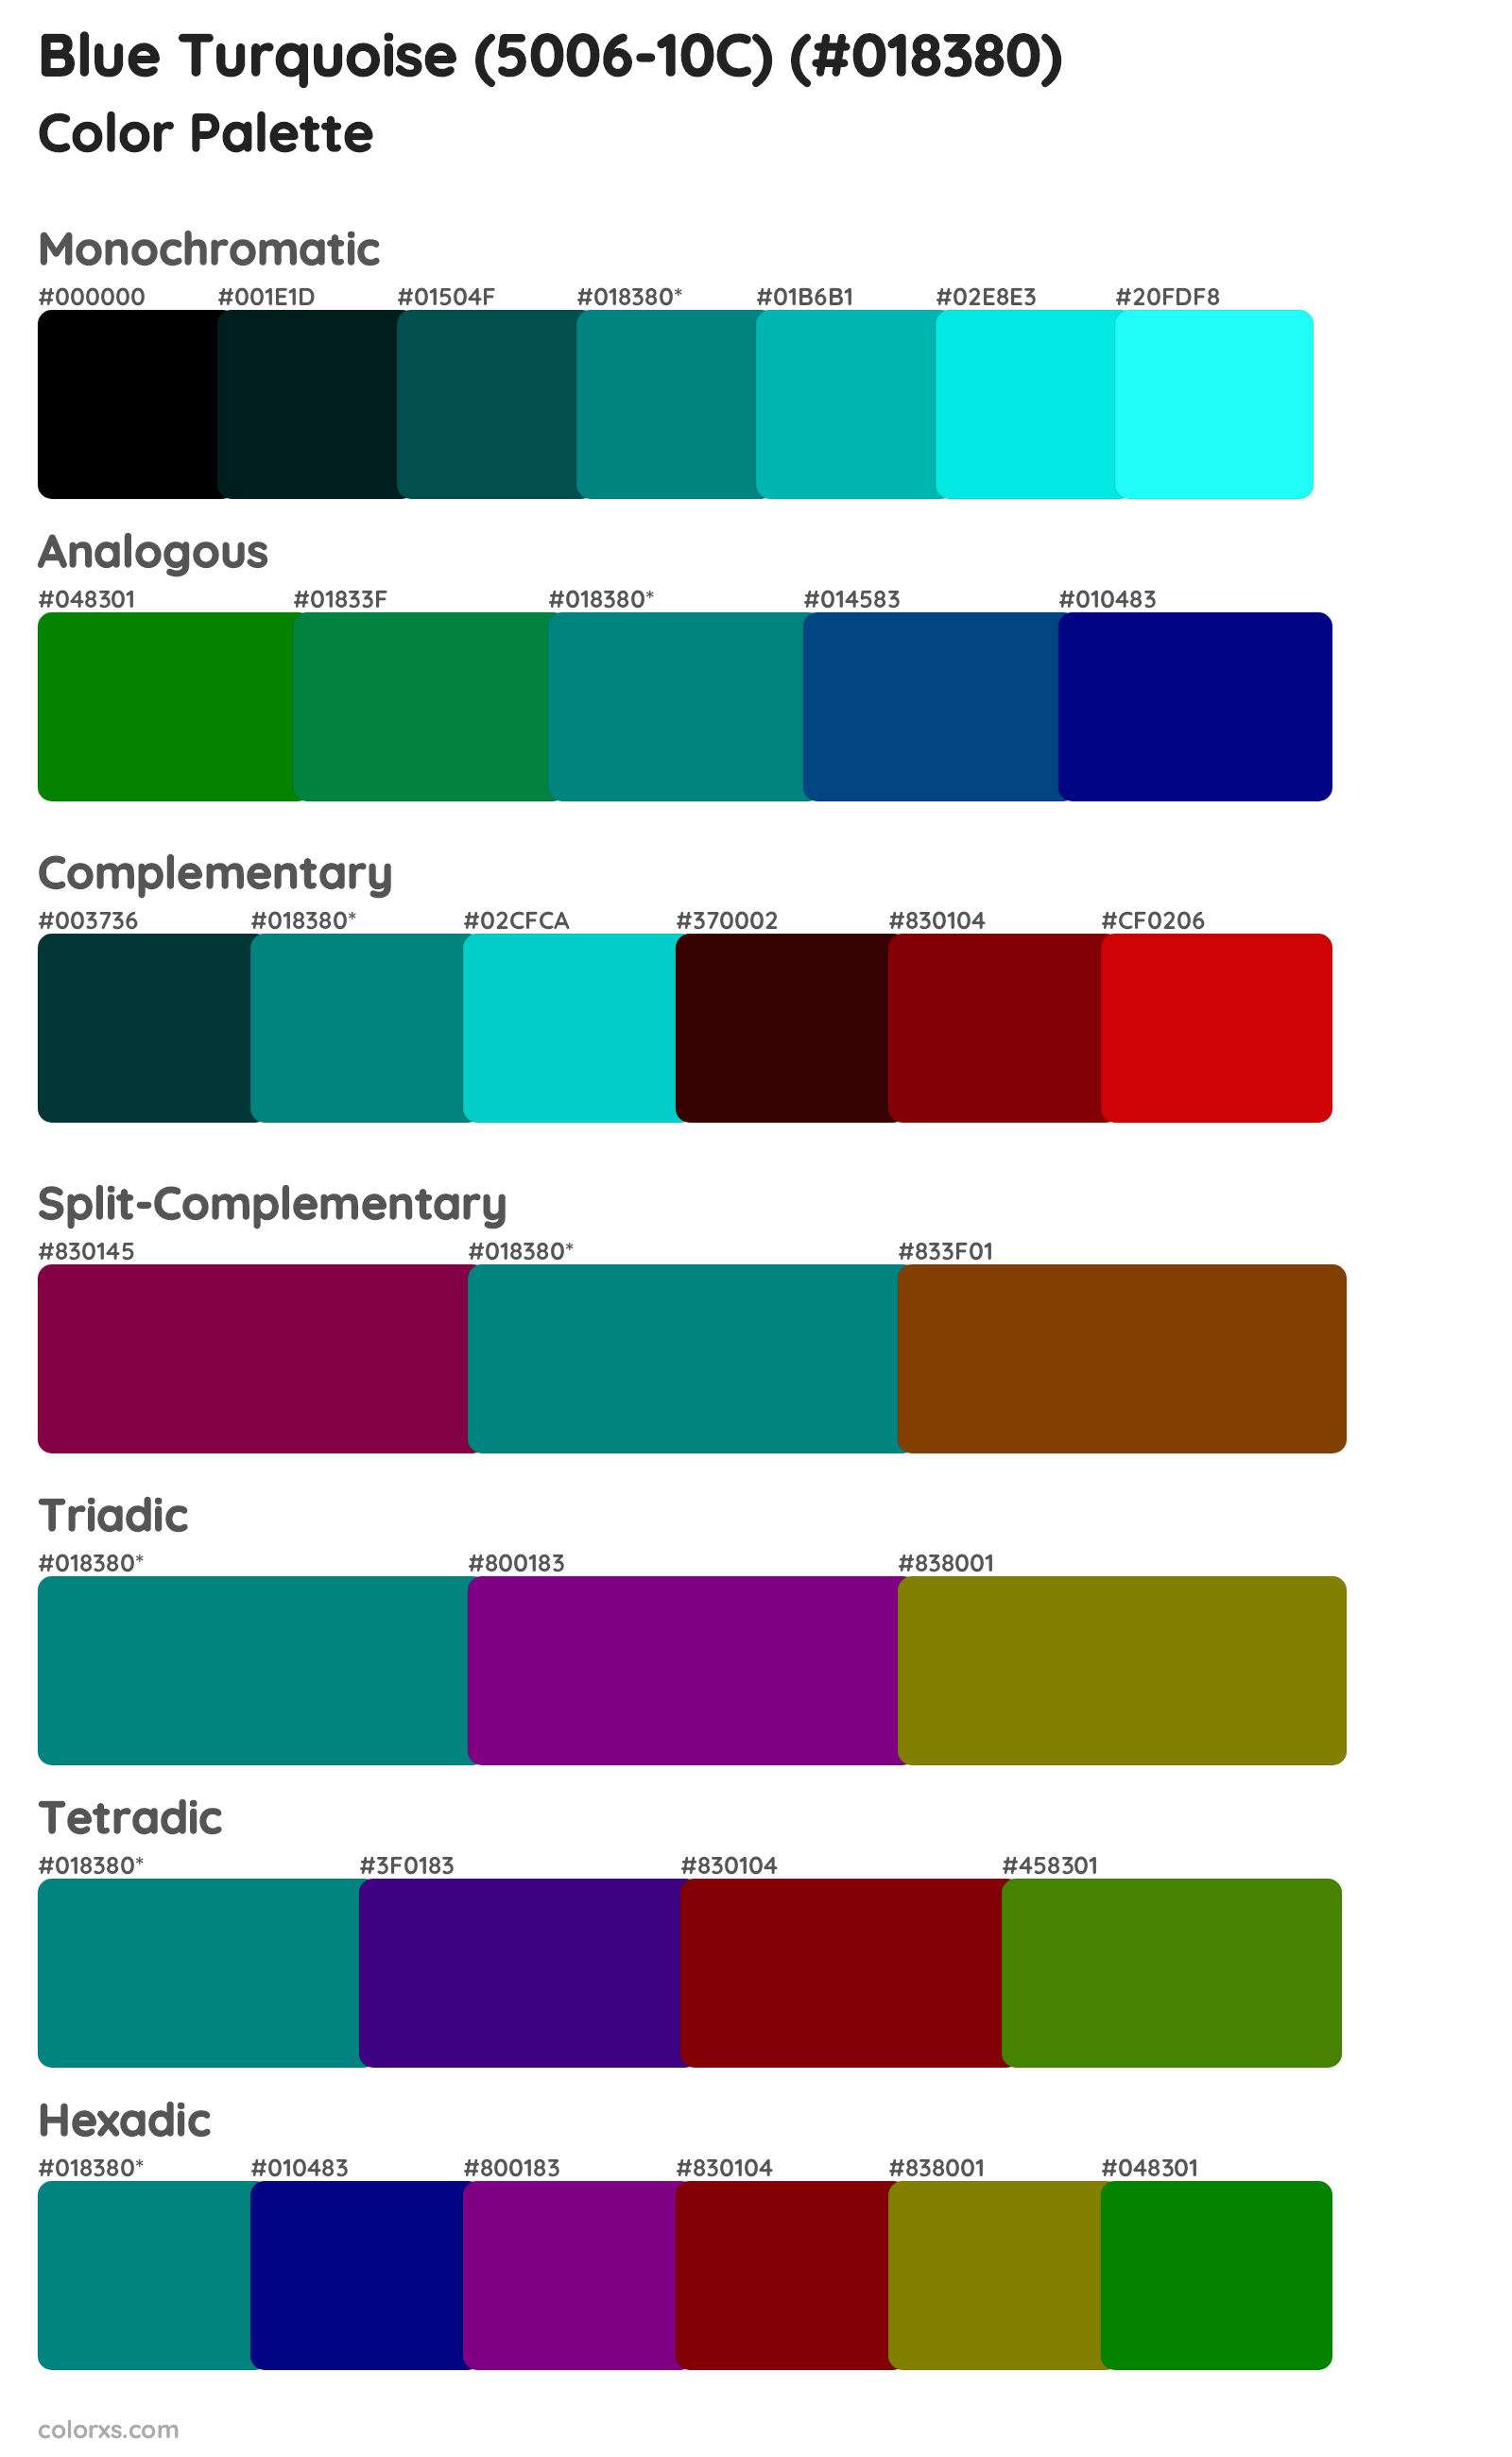 Blue Turquoise (5006-10C) Color Scheme Palettes